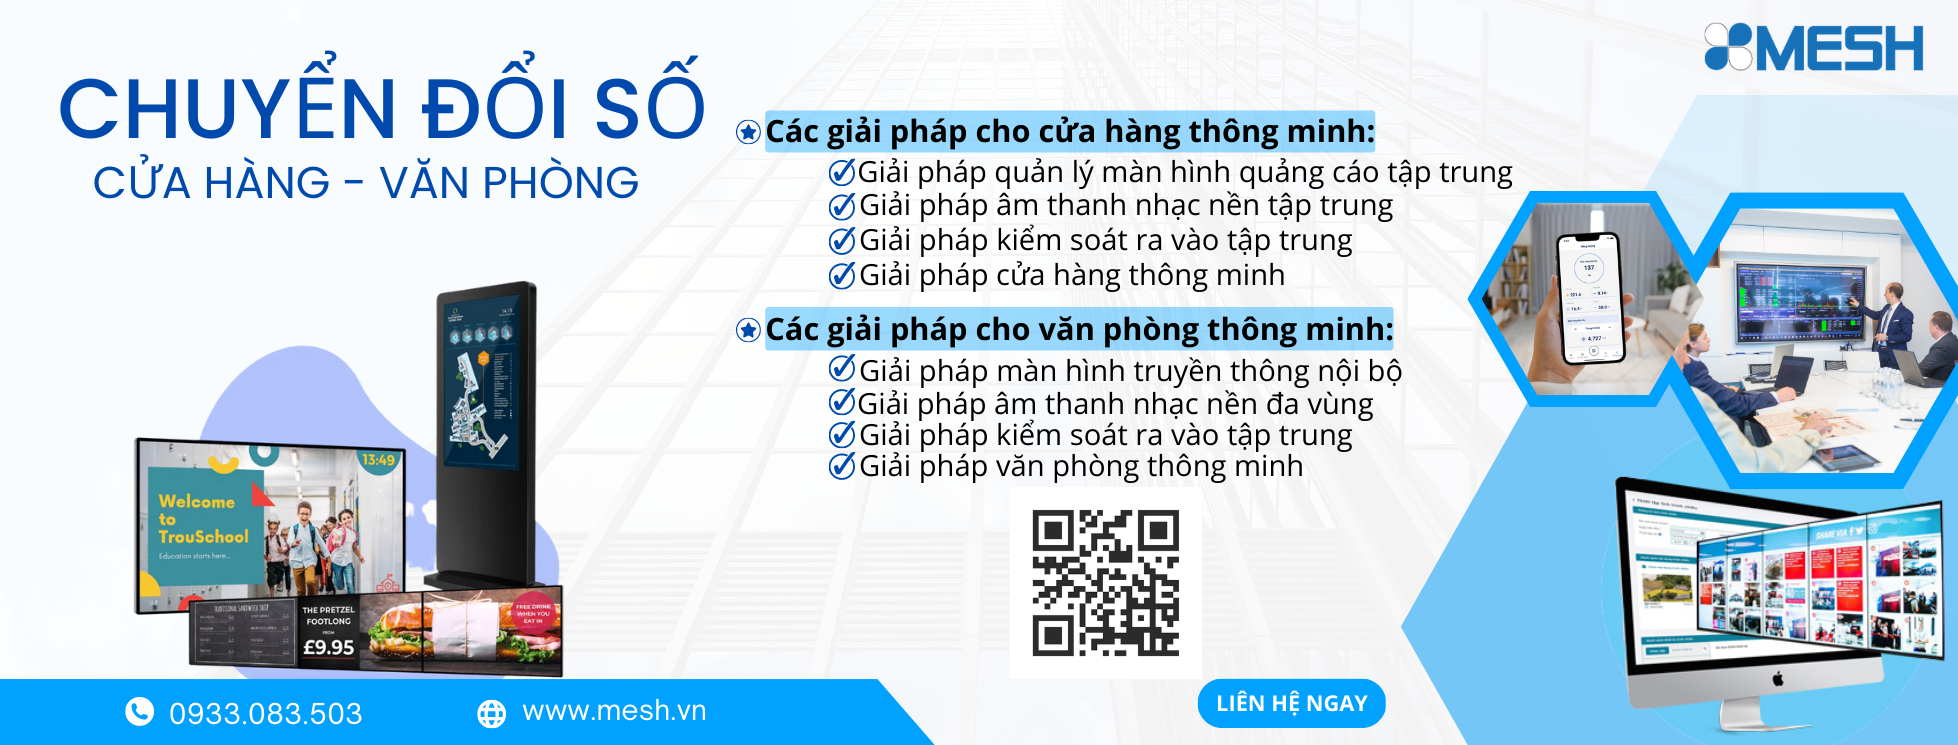 Mesh Smart Workplace – nhà cung cấp giải pháp thông minh, chuyển đổi số hàng đầu Việt Nam cho cửa hàng, văn phòng doanh nghiệp